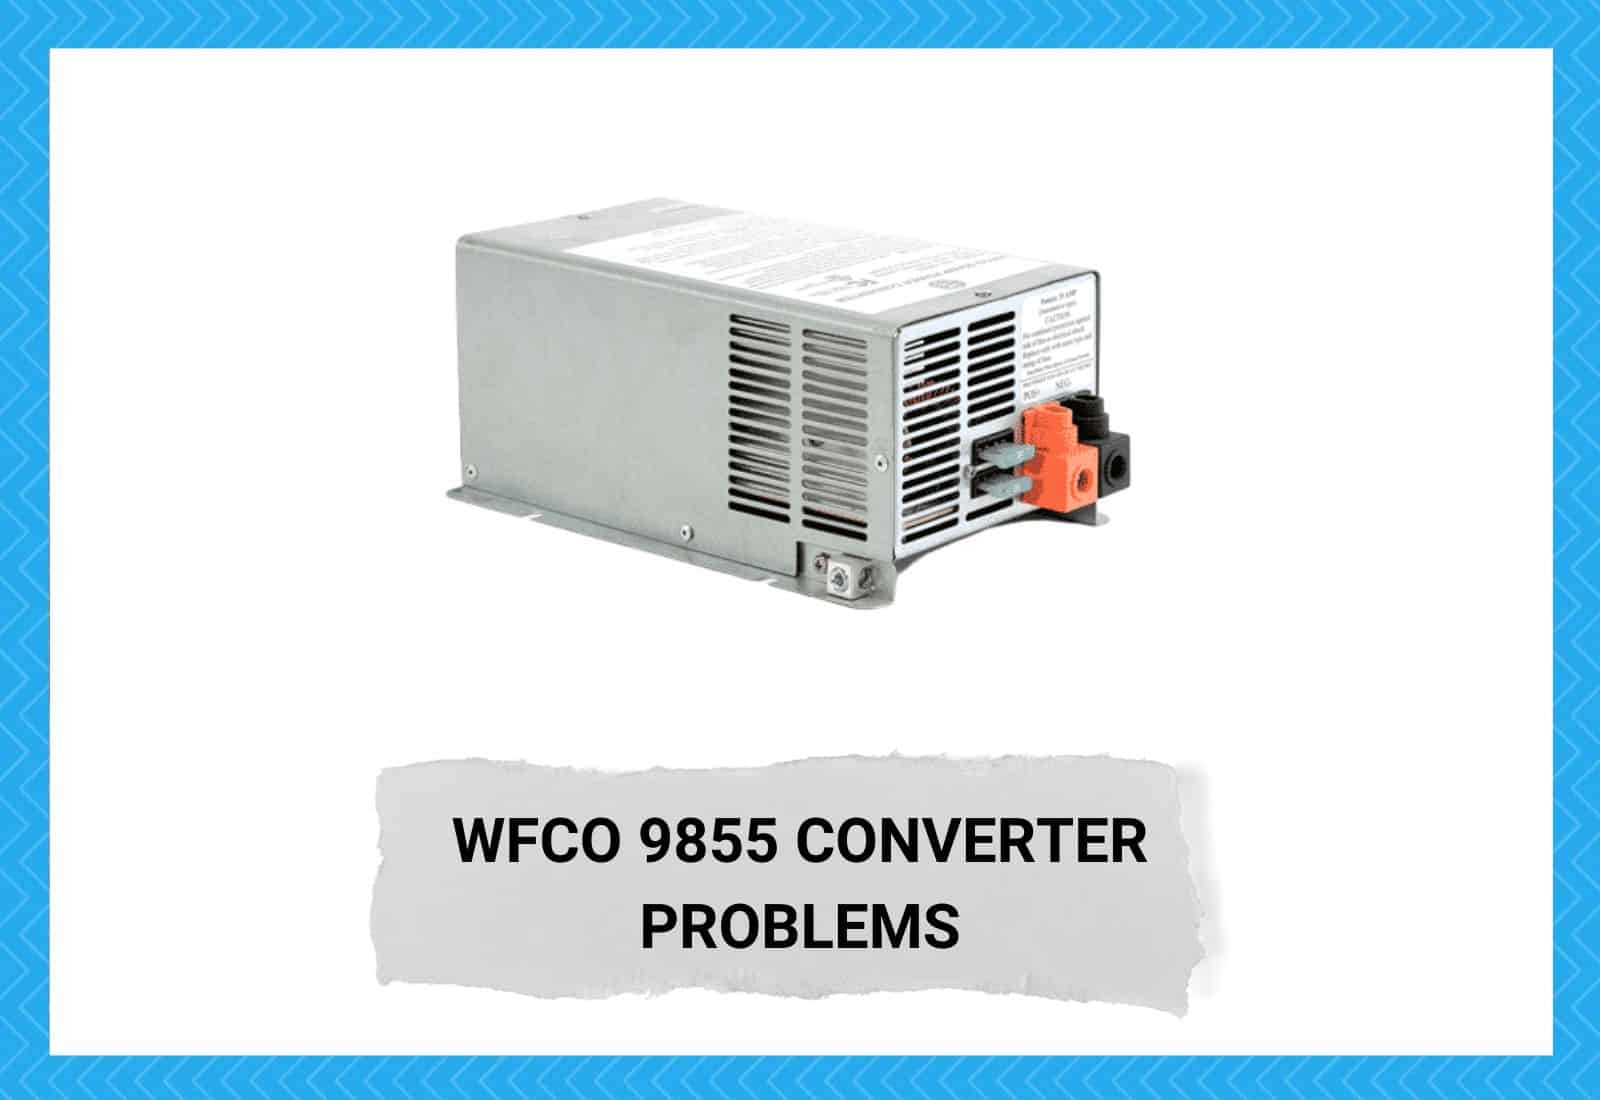 WFCO 9855 Converter Problems